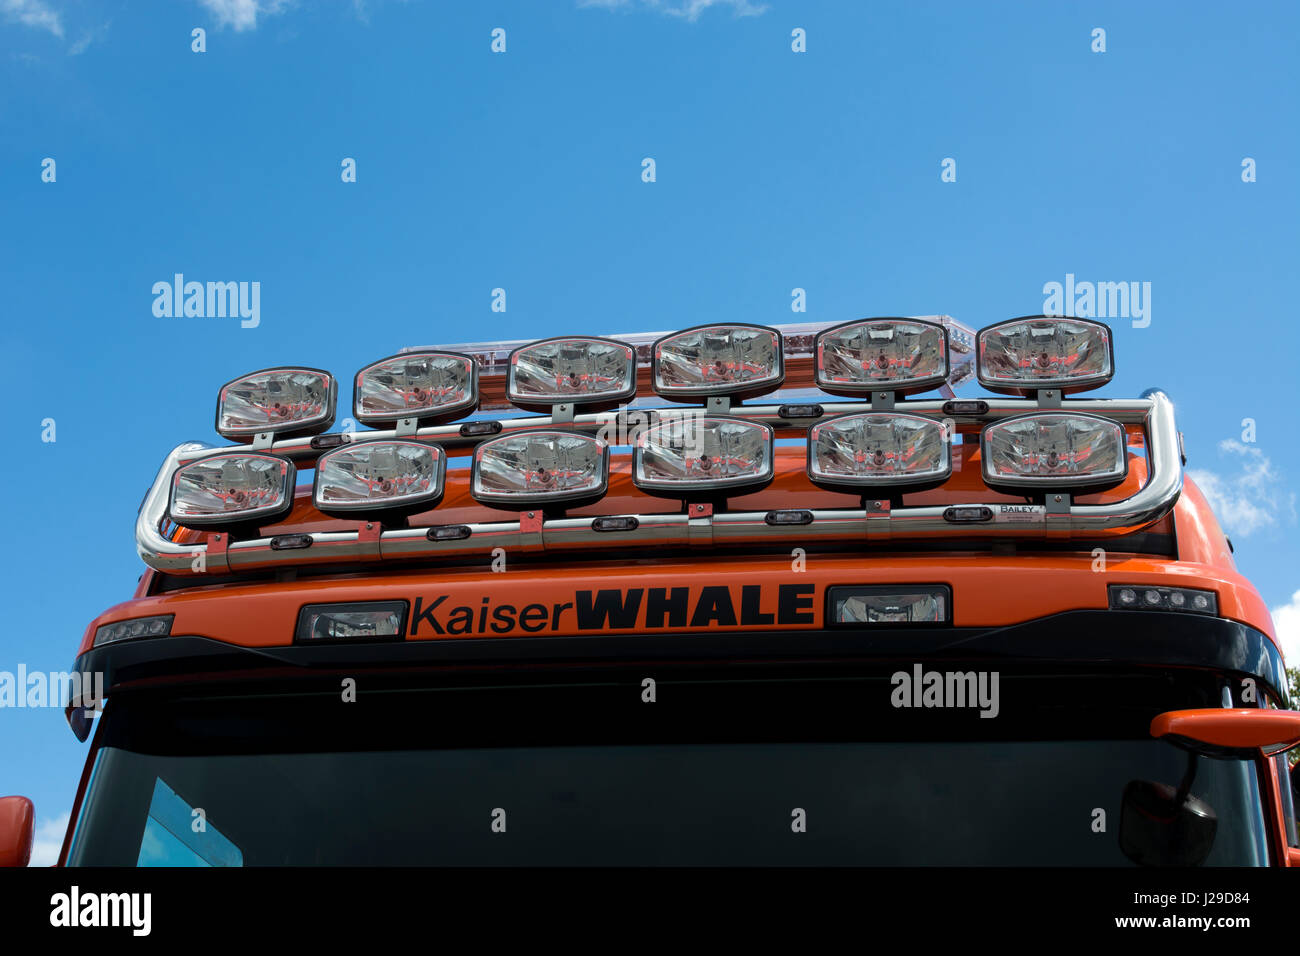 Des phares des véhicules-citernes des baleines Kaiser, Commercial Vehicle Show, NEC, Birmingham, UK Banque D'Images